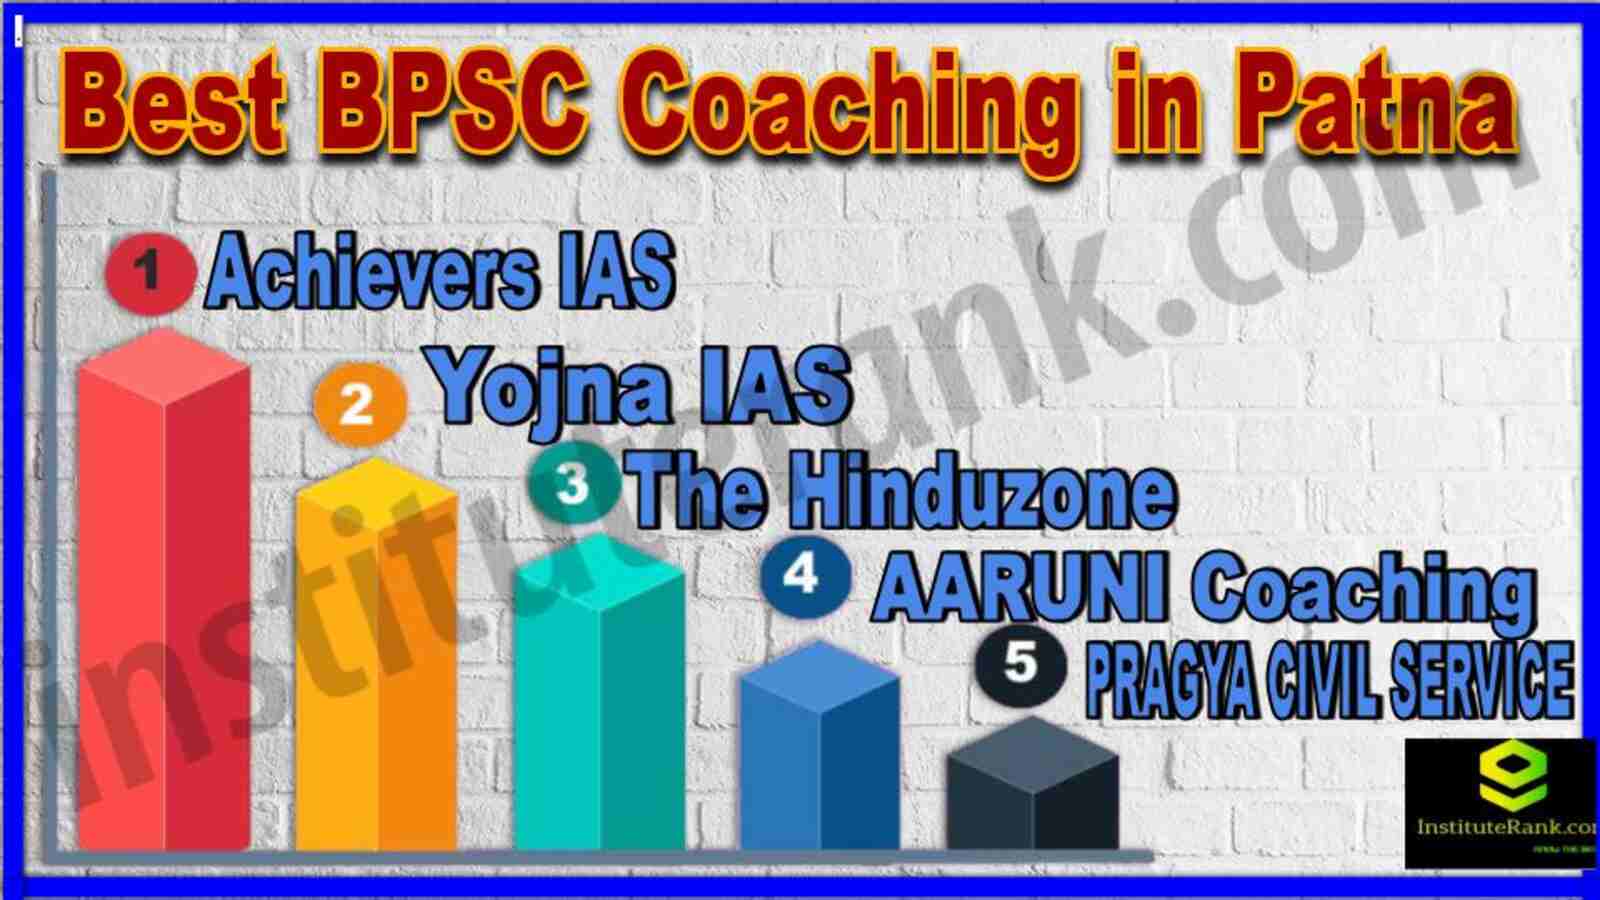 Best BPSC Coaching Institute in Patna